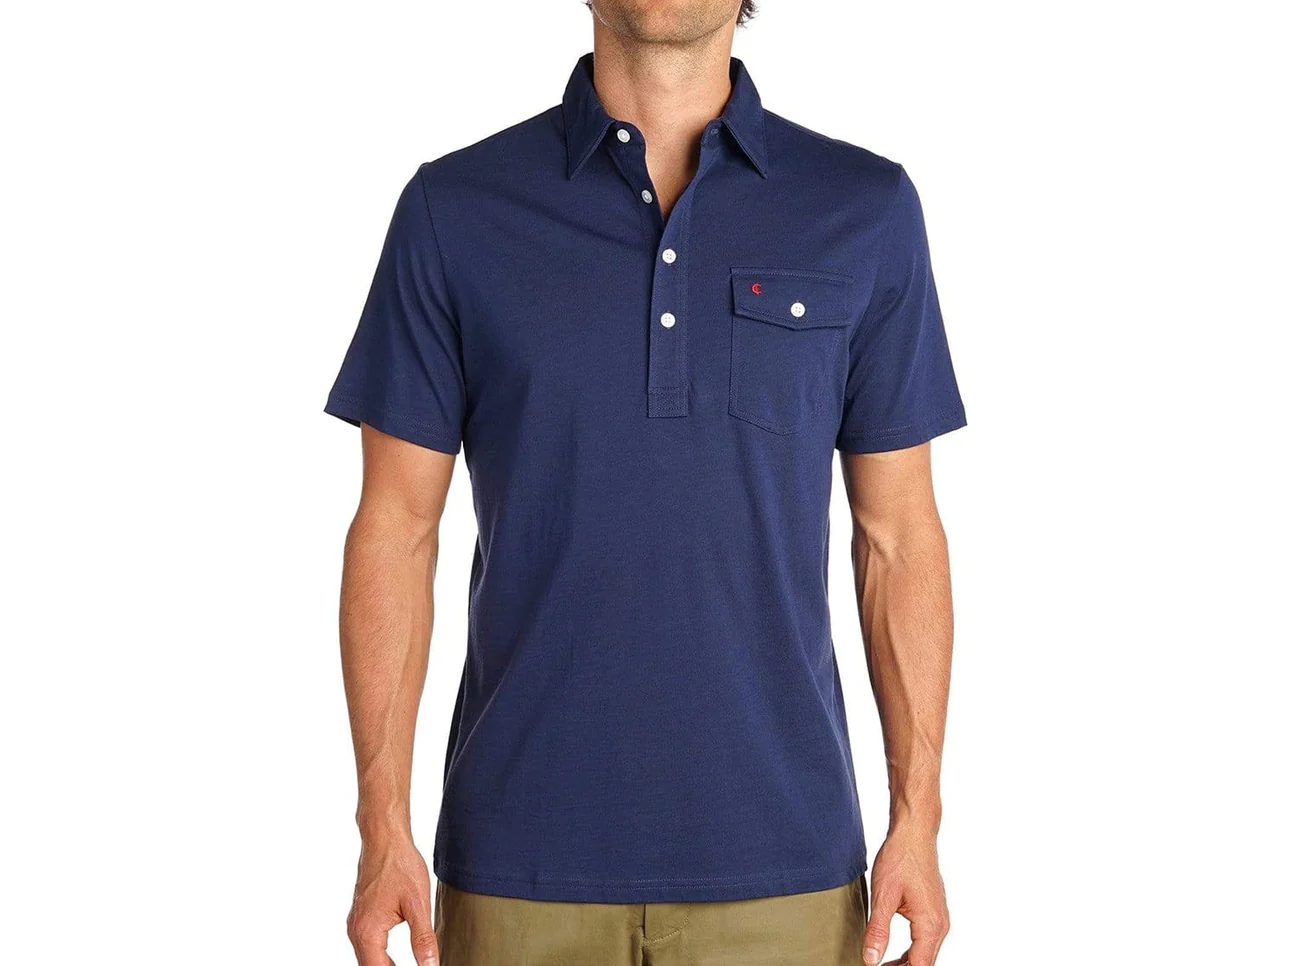 Man in blue polo shirt 